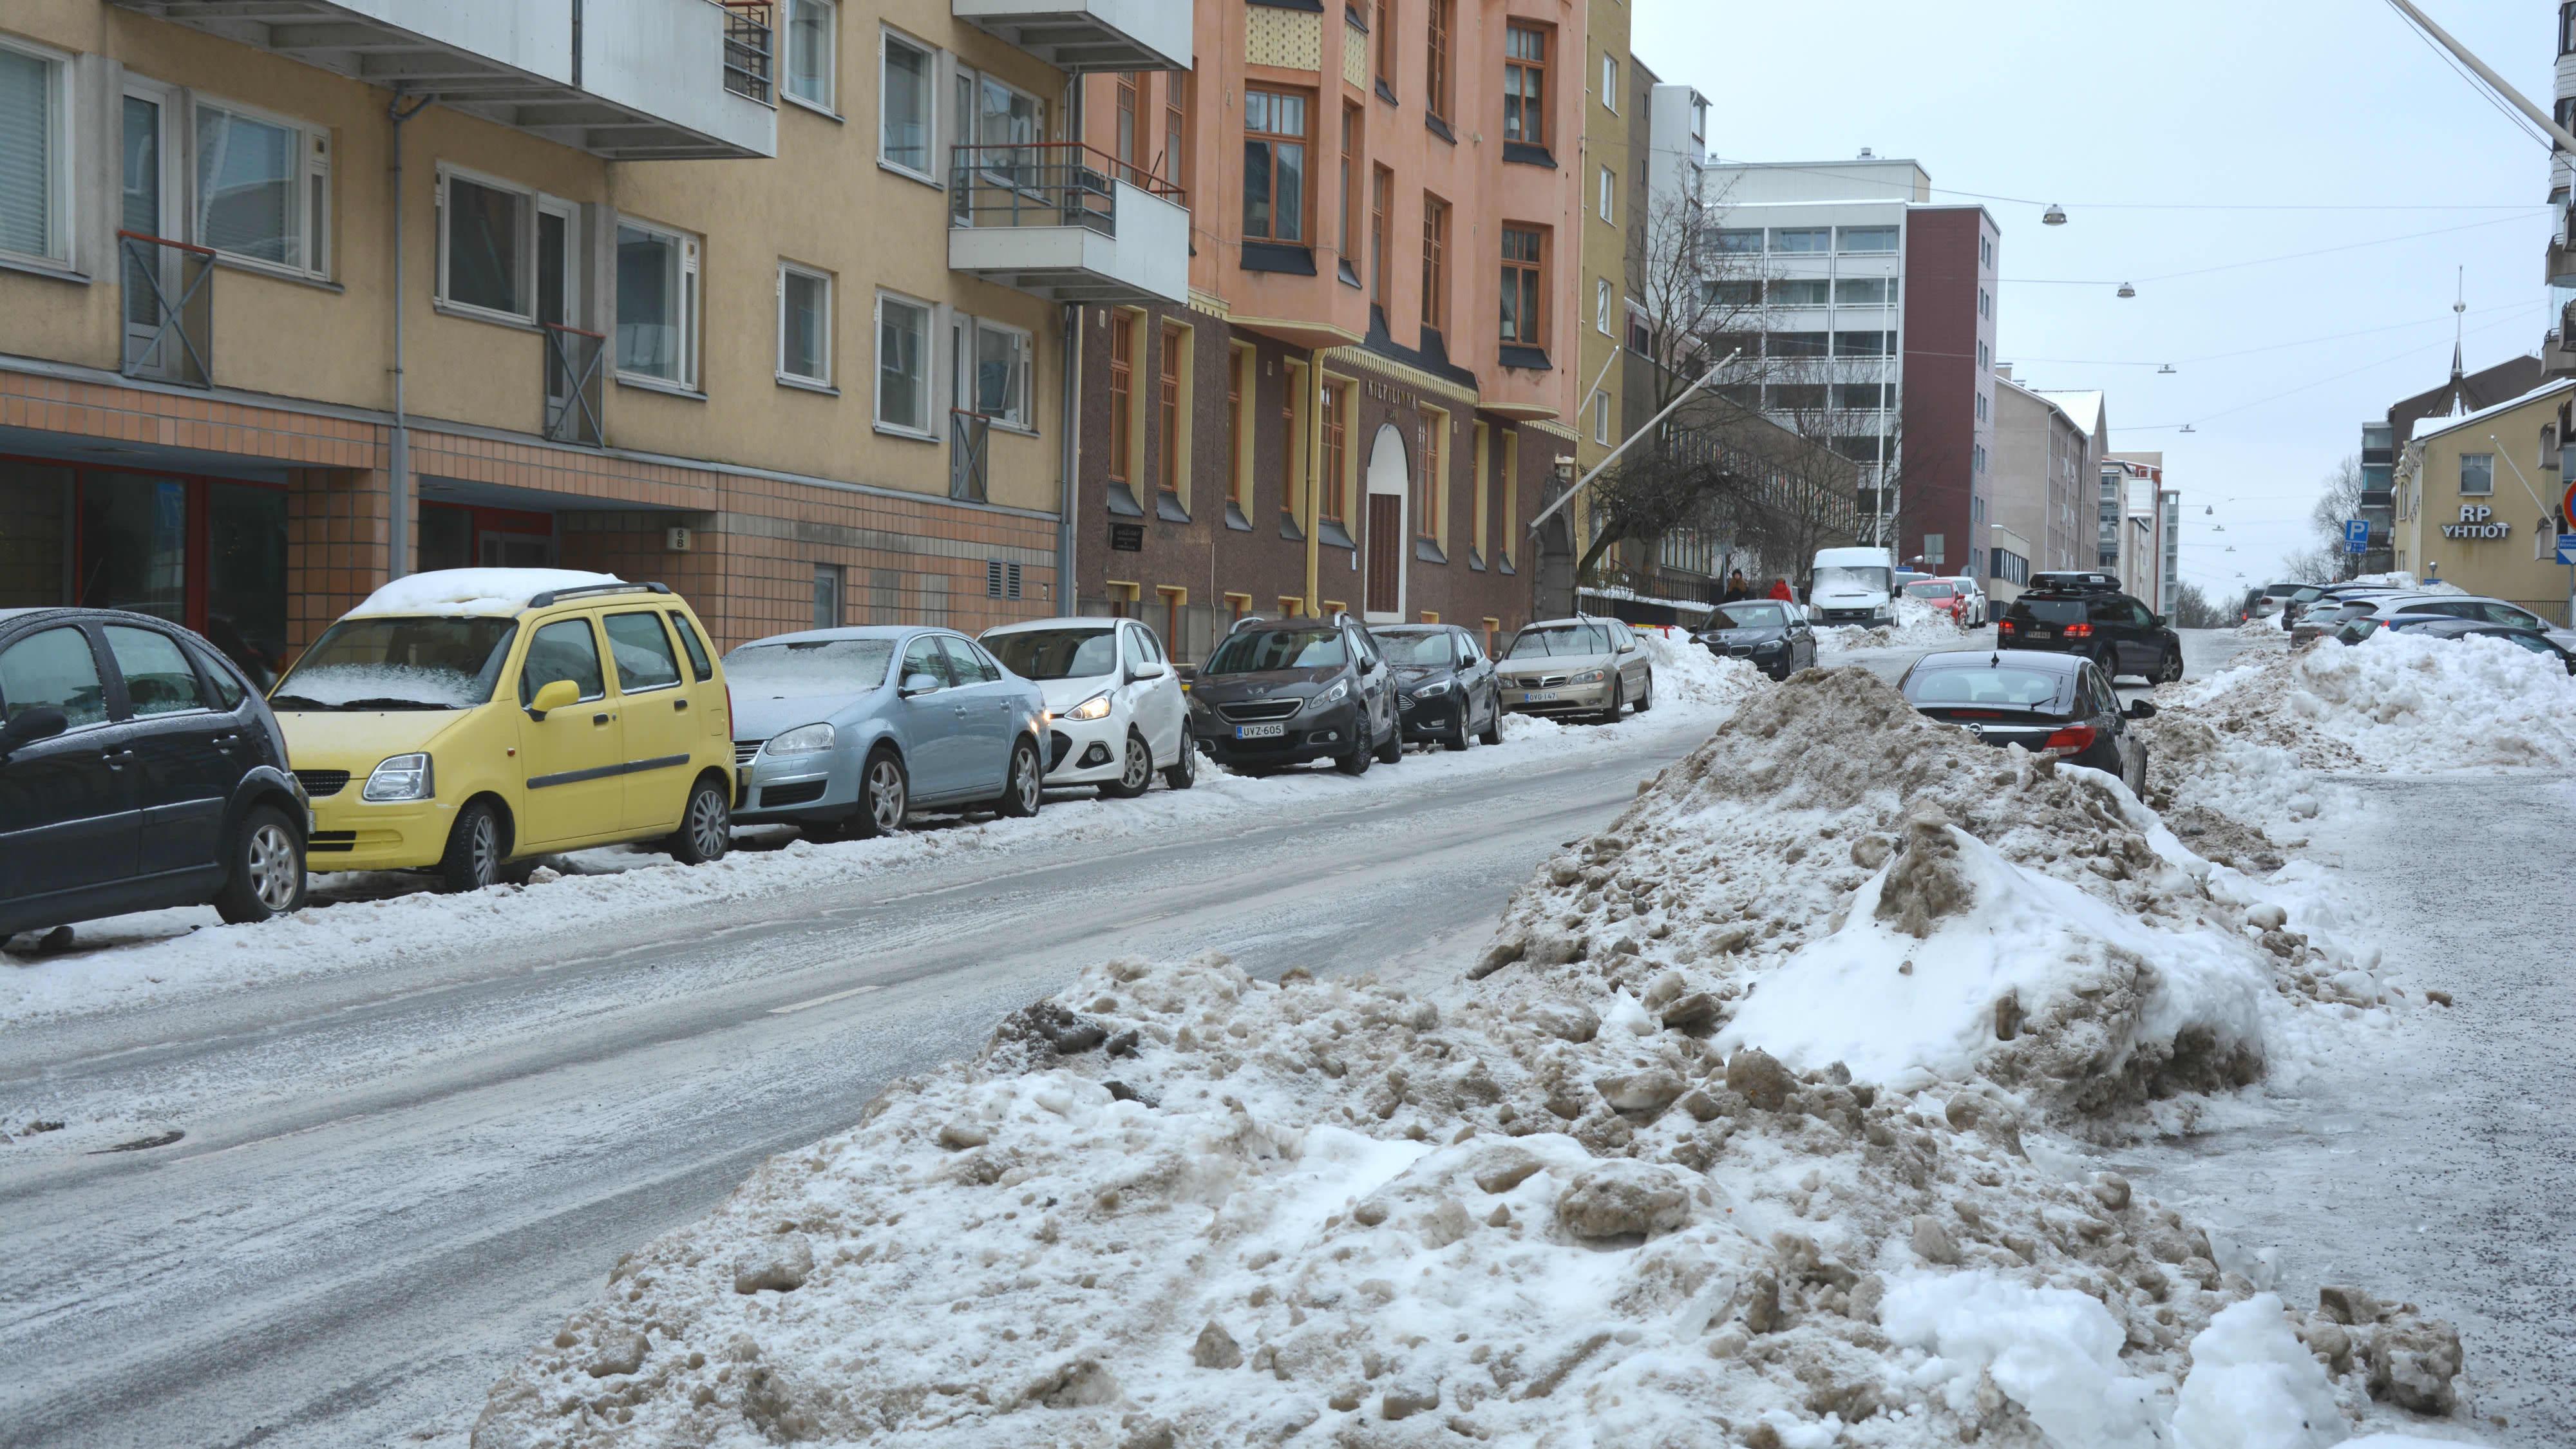 Stora snöhögar på en smal väg, flera bilar står parkerade längs vägen. 